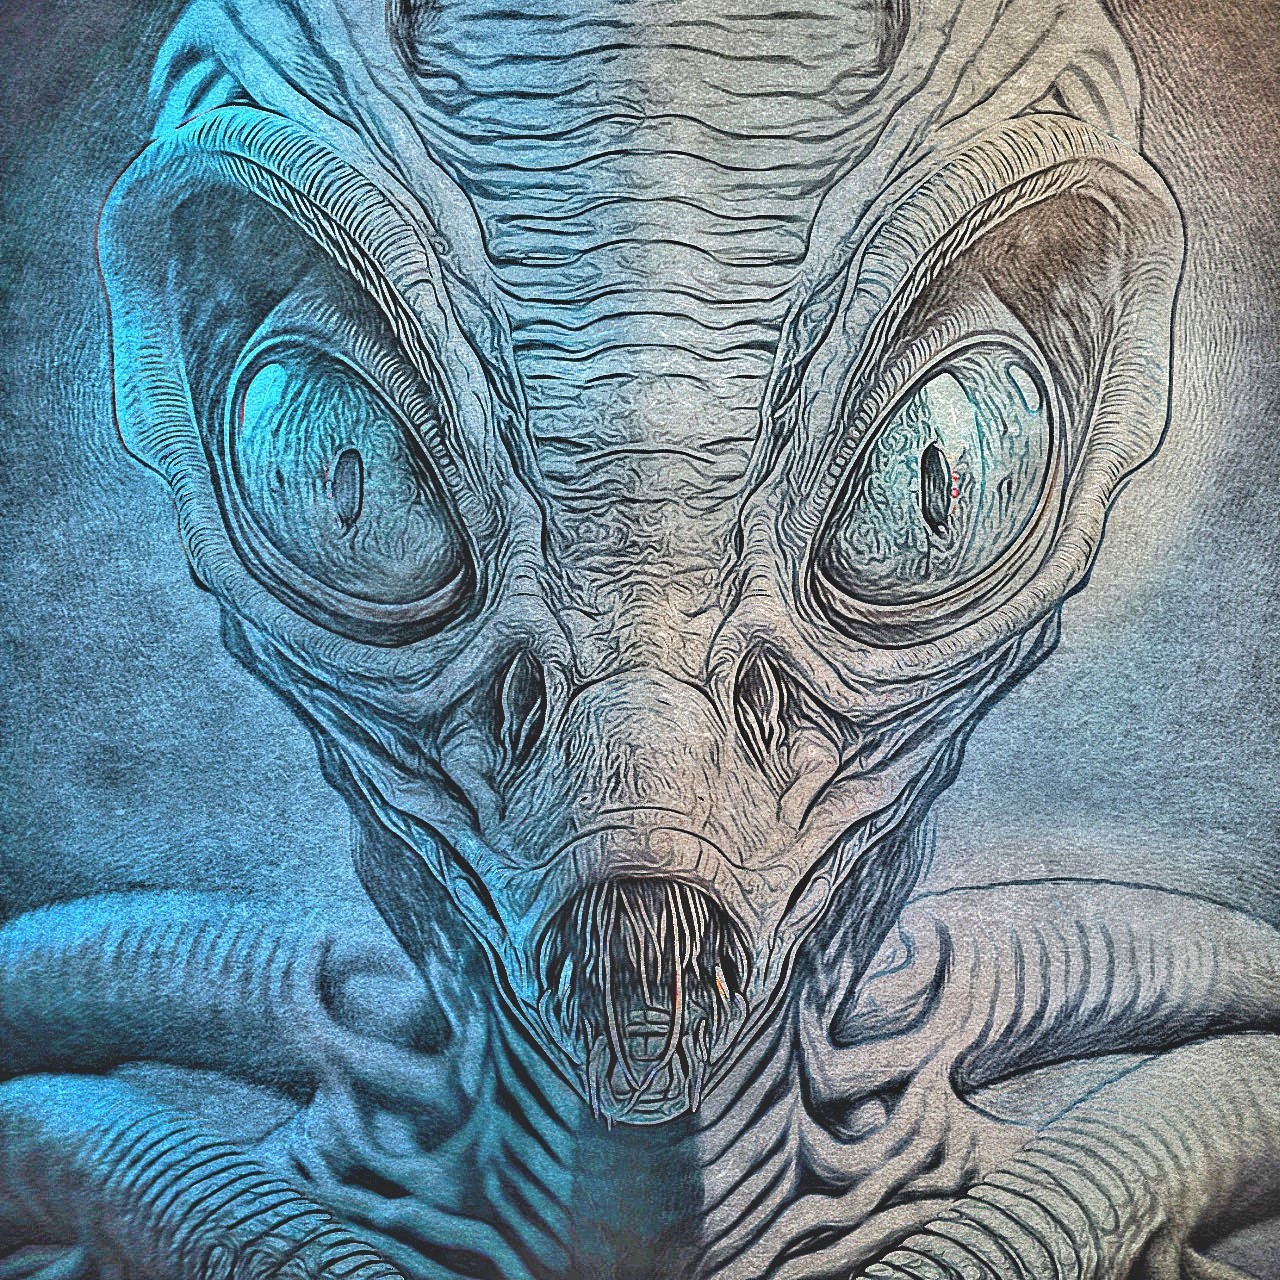 Scary Alien Drawings 